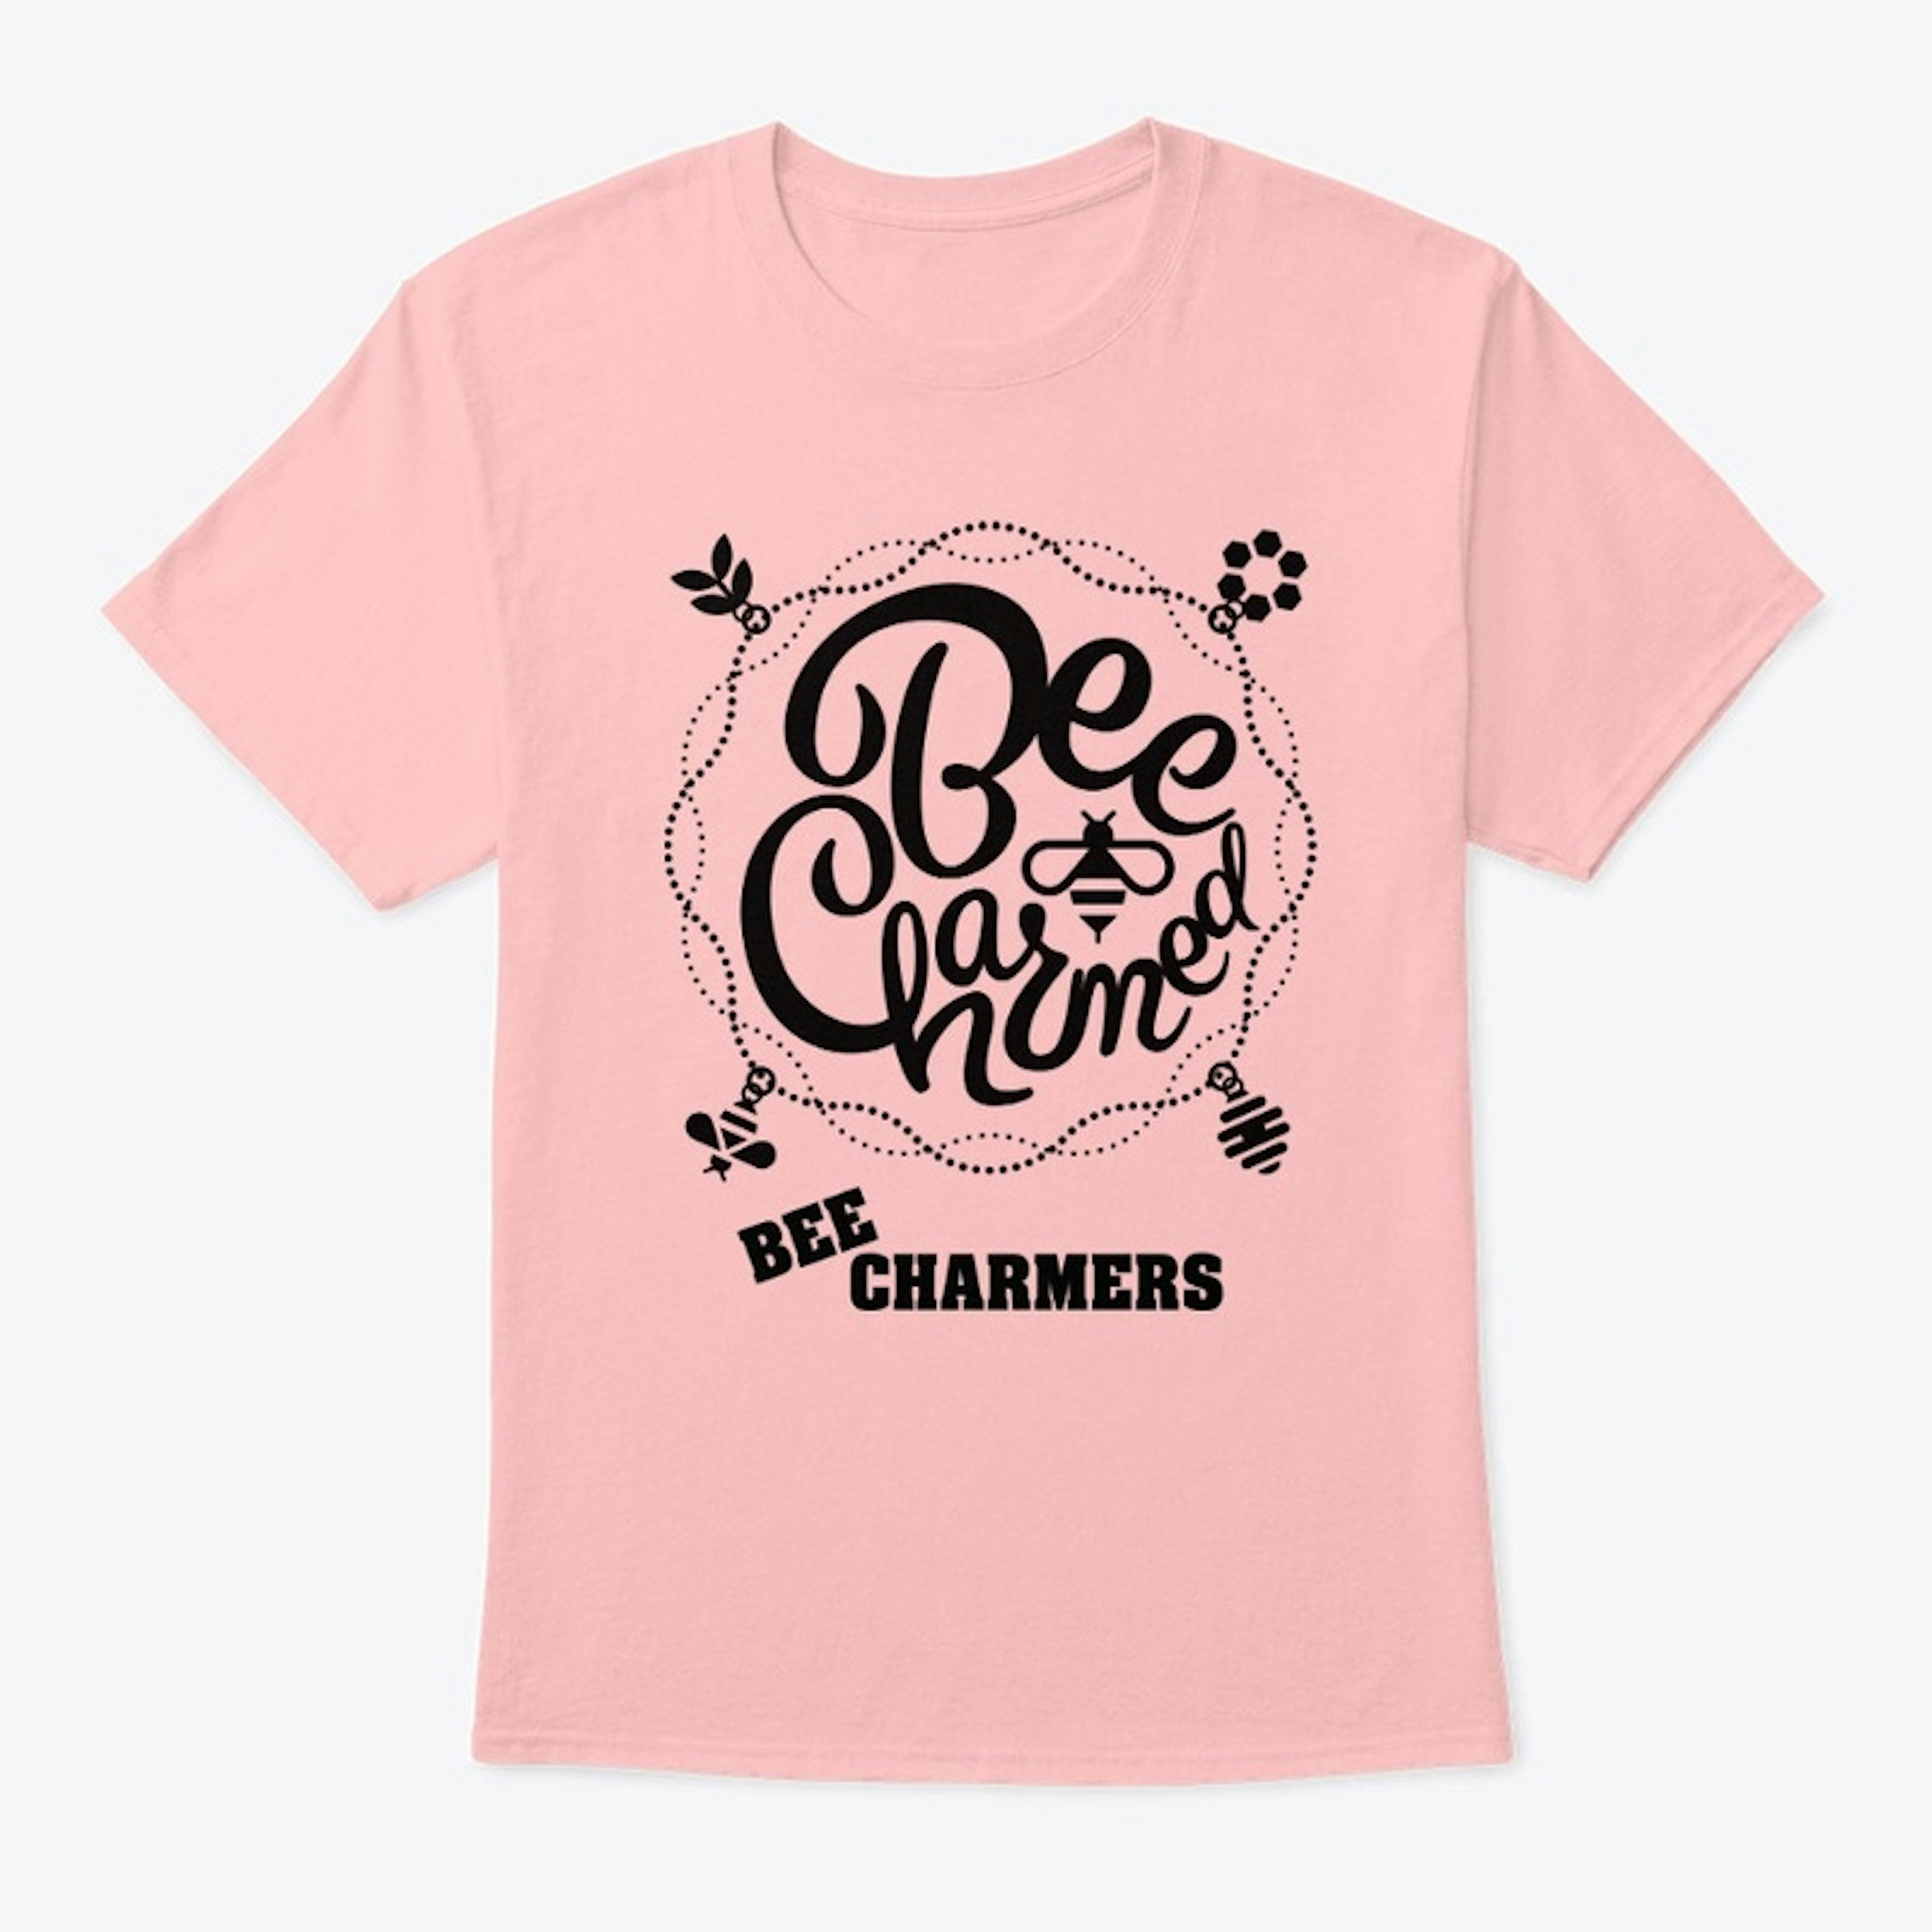 Bee Charmed Bee Charmers Tee